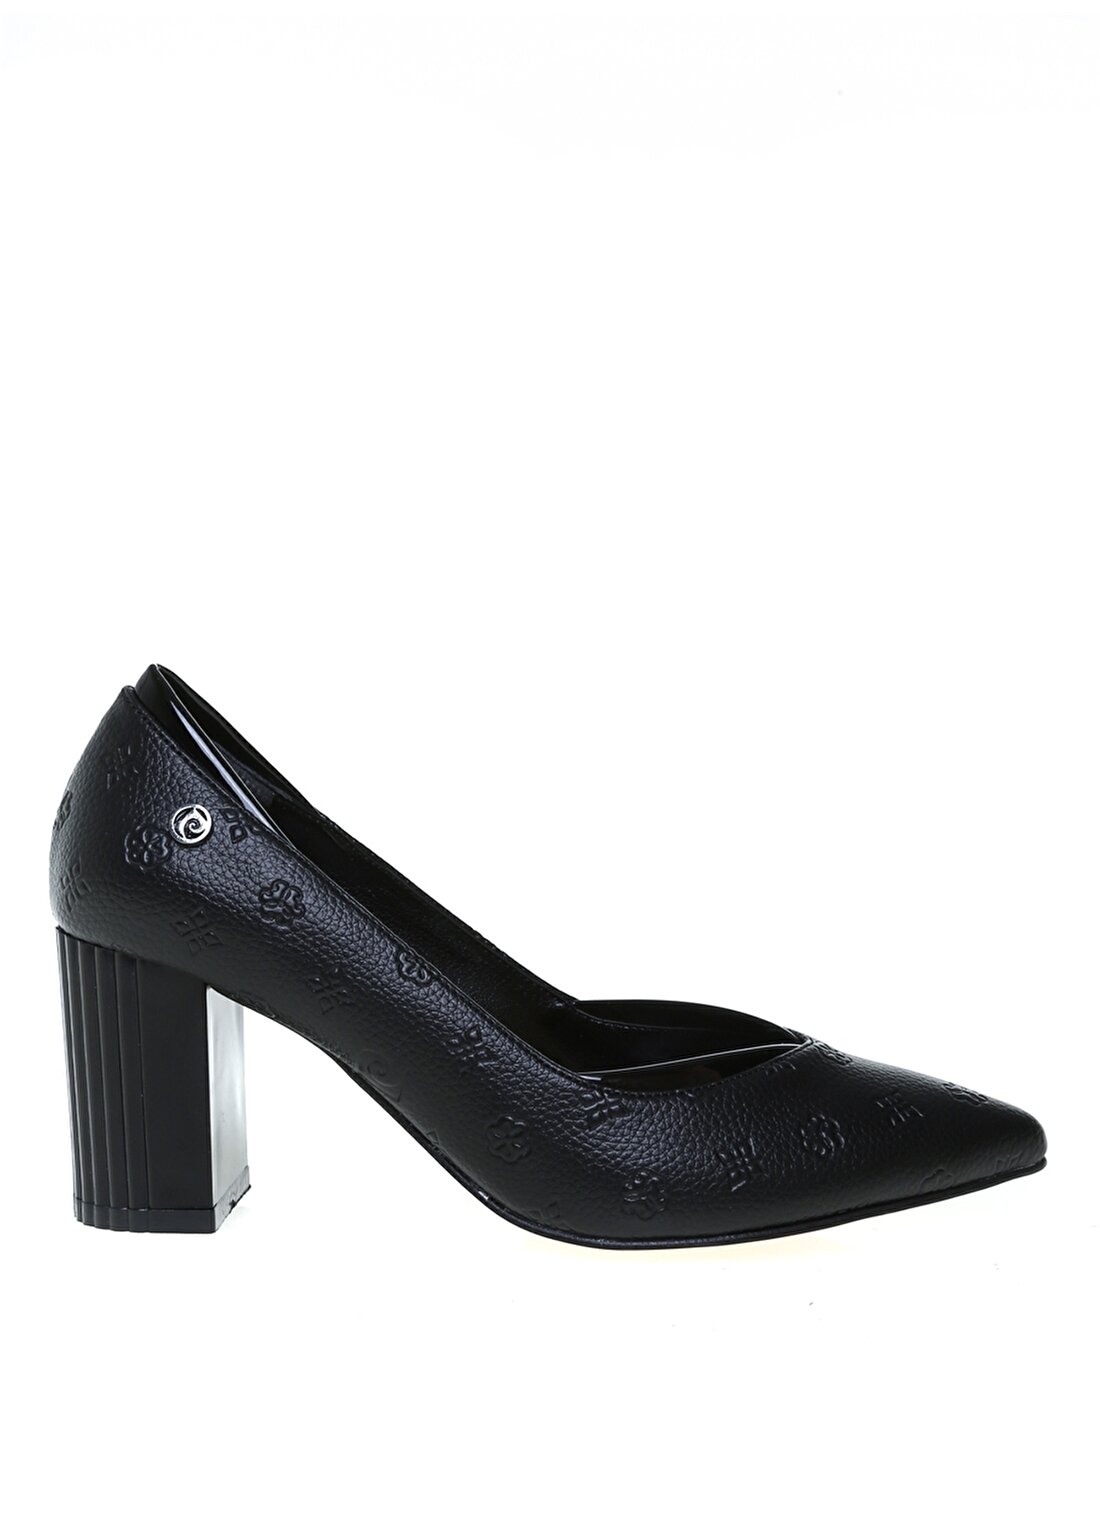 Pierre Cardin Siyah Kadın Topuklu Ayakkabı PC-51199